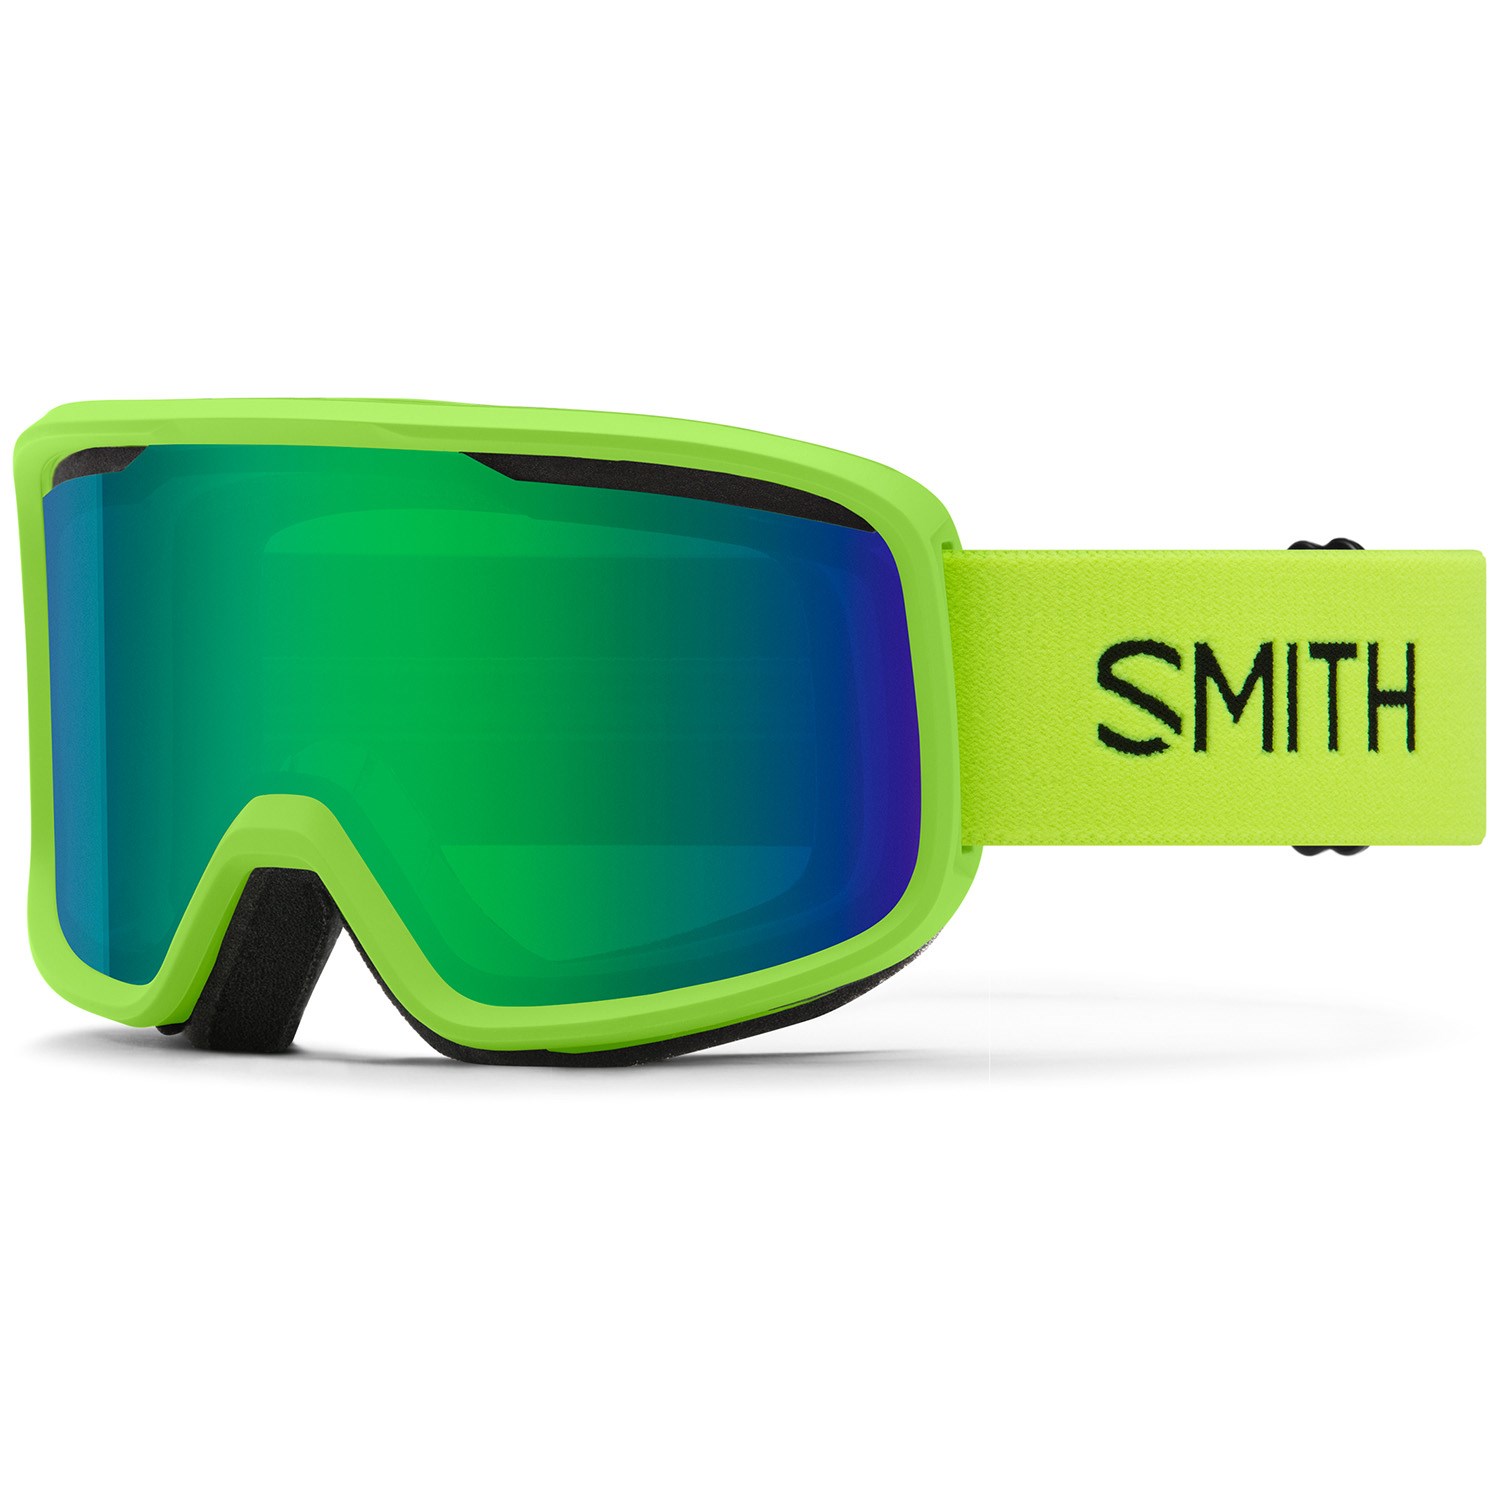 Smith Frontier Goggles | evo Canada